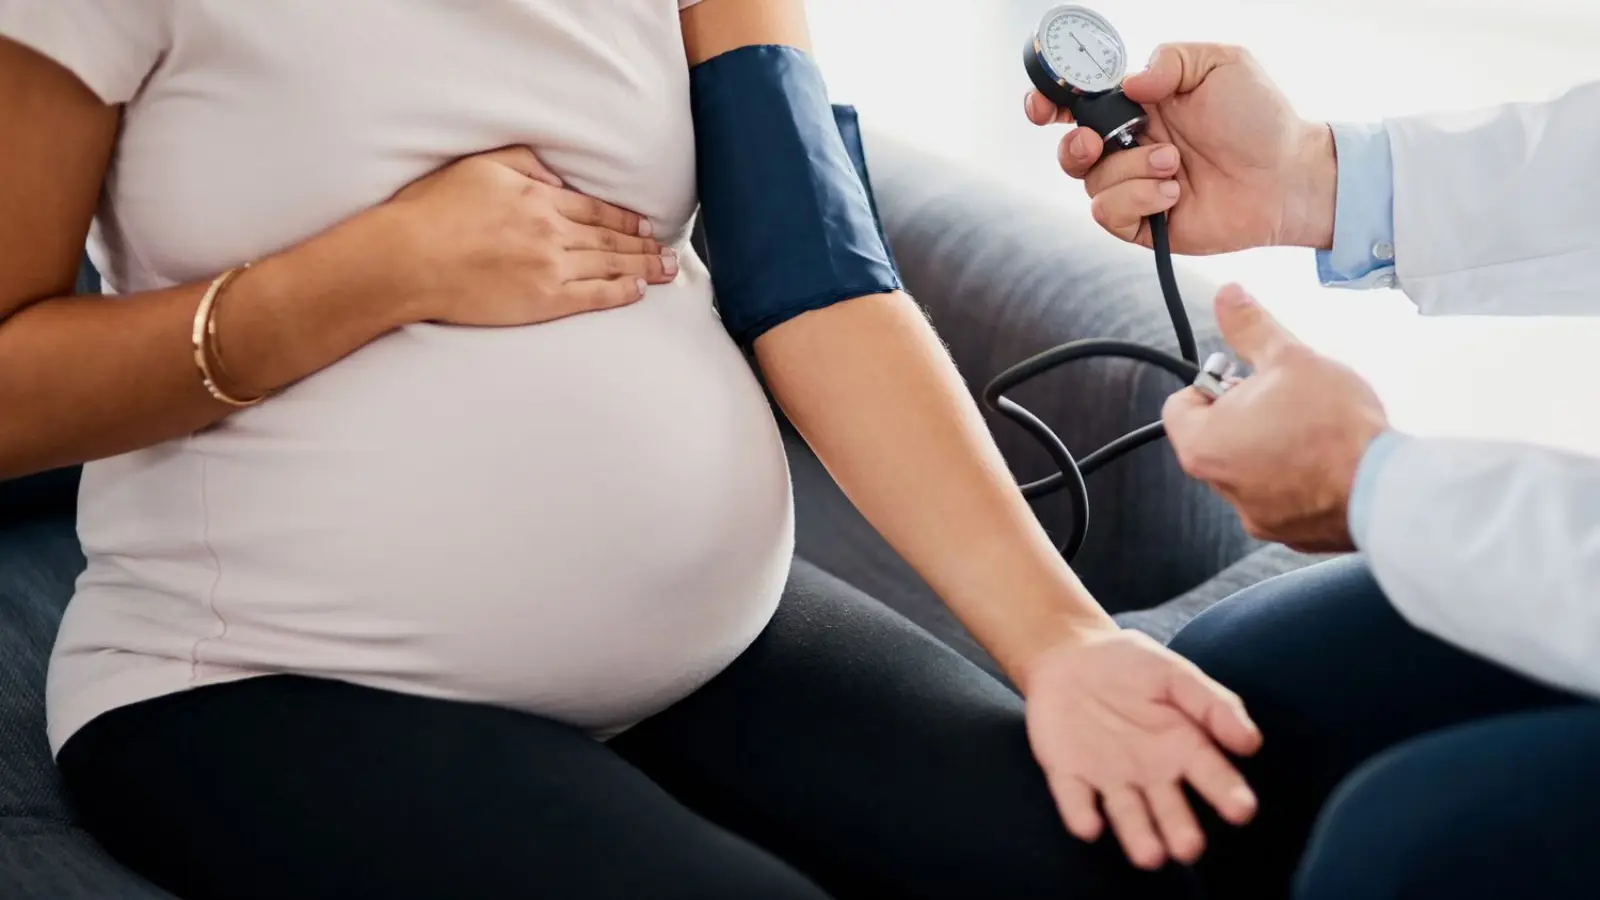 دراسة تحذر: مضاعفات الحمل ترتبط بزيادة خطر الوفاة المبكرة